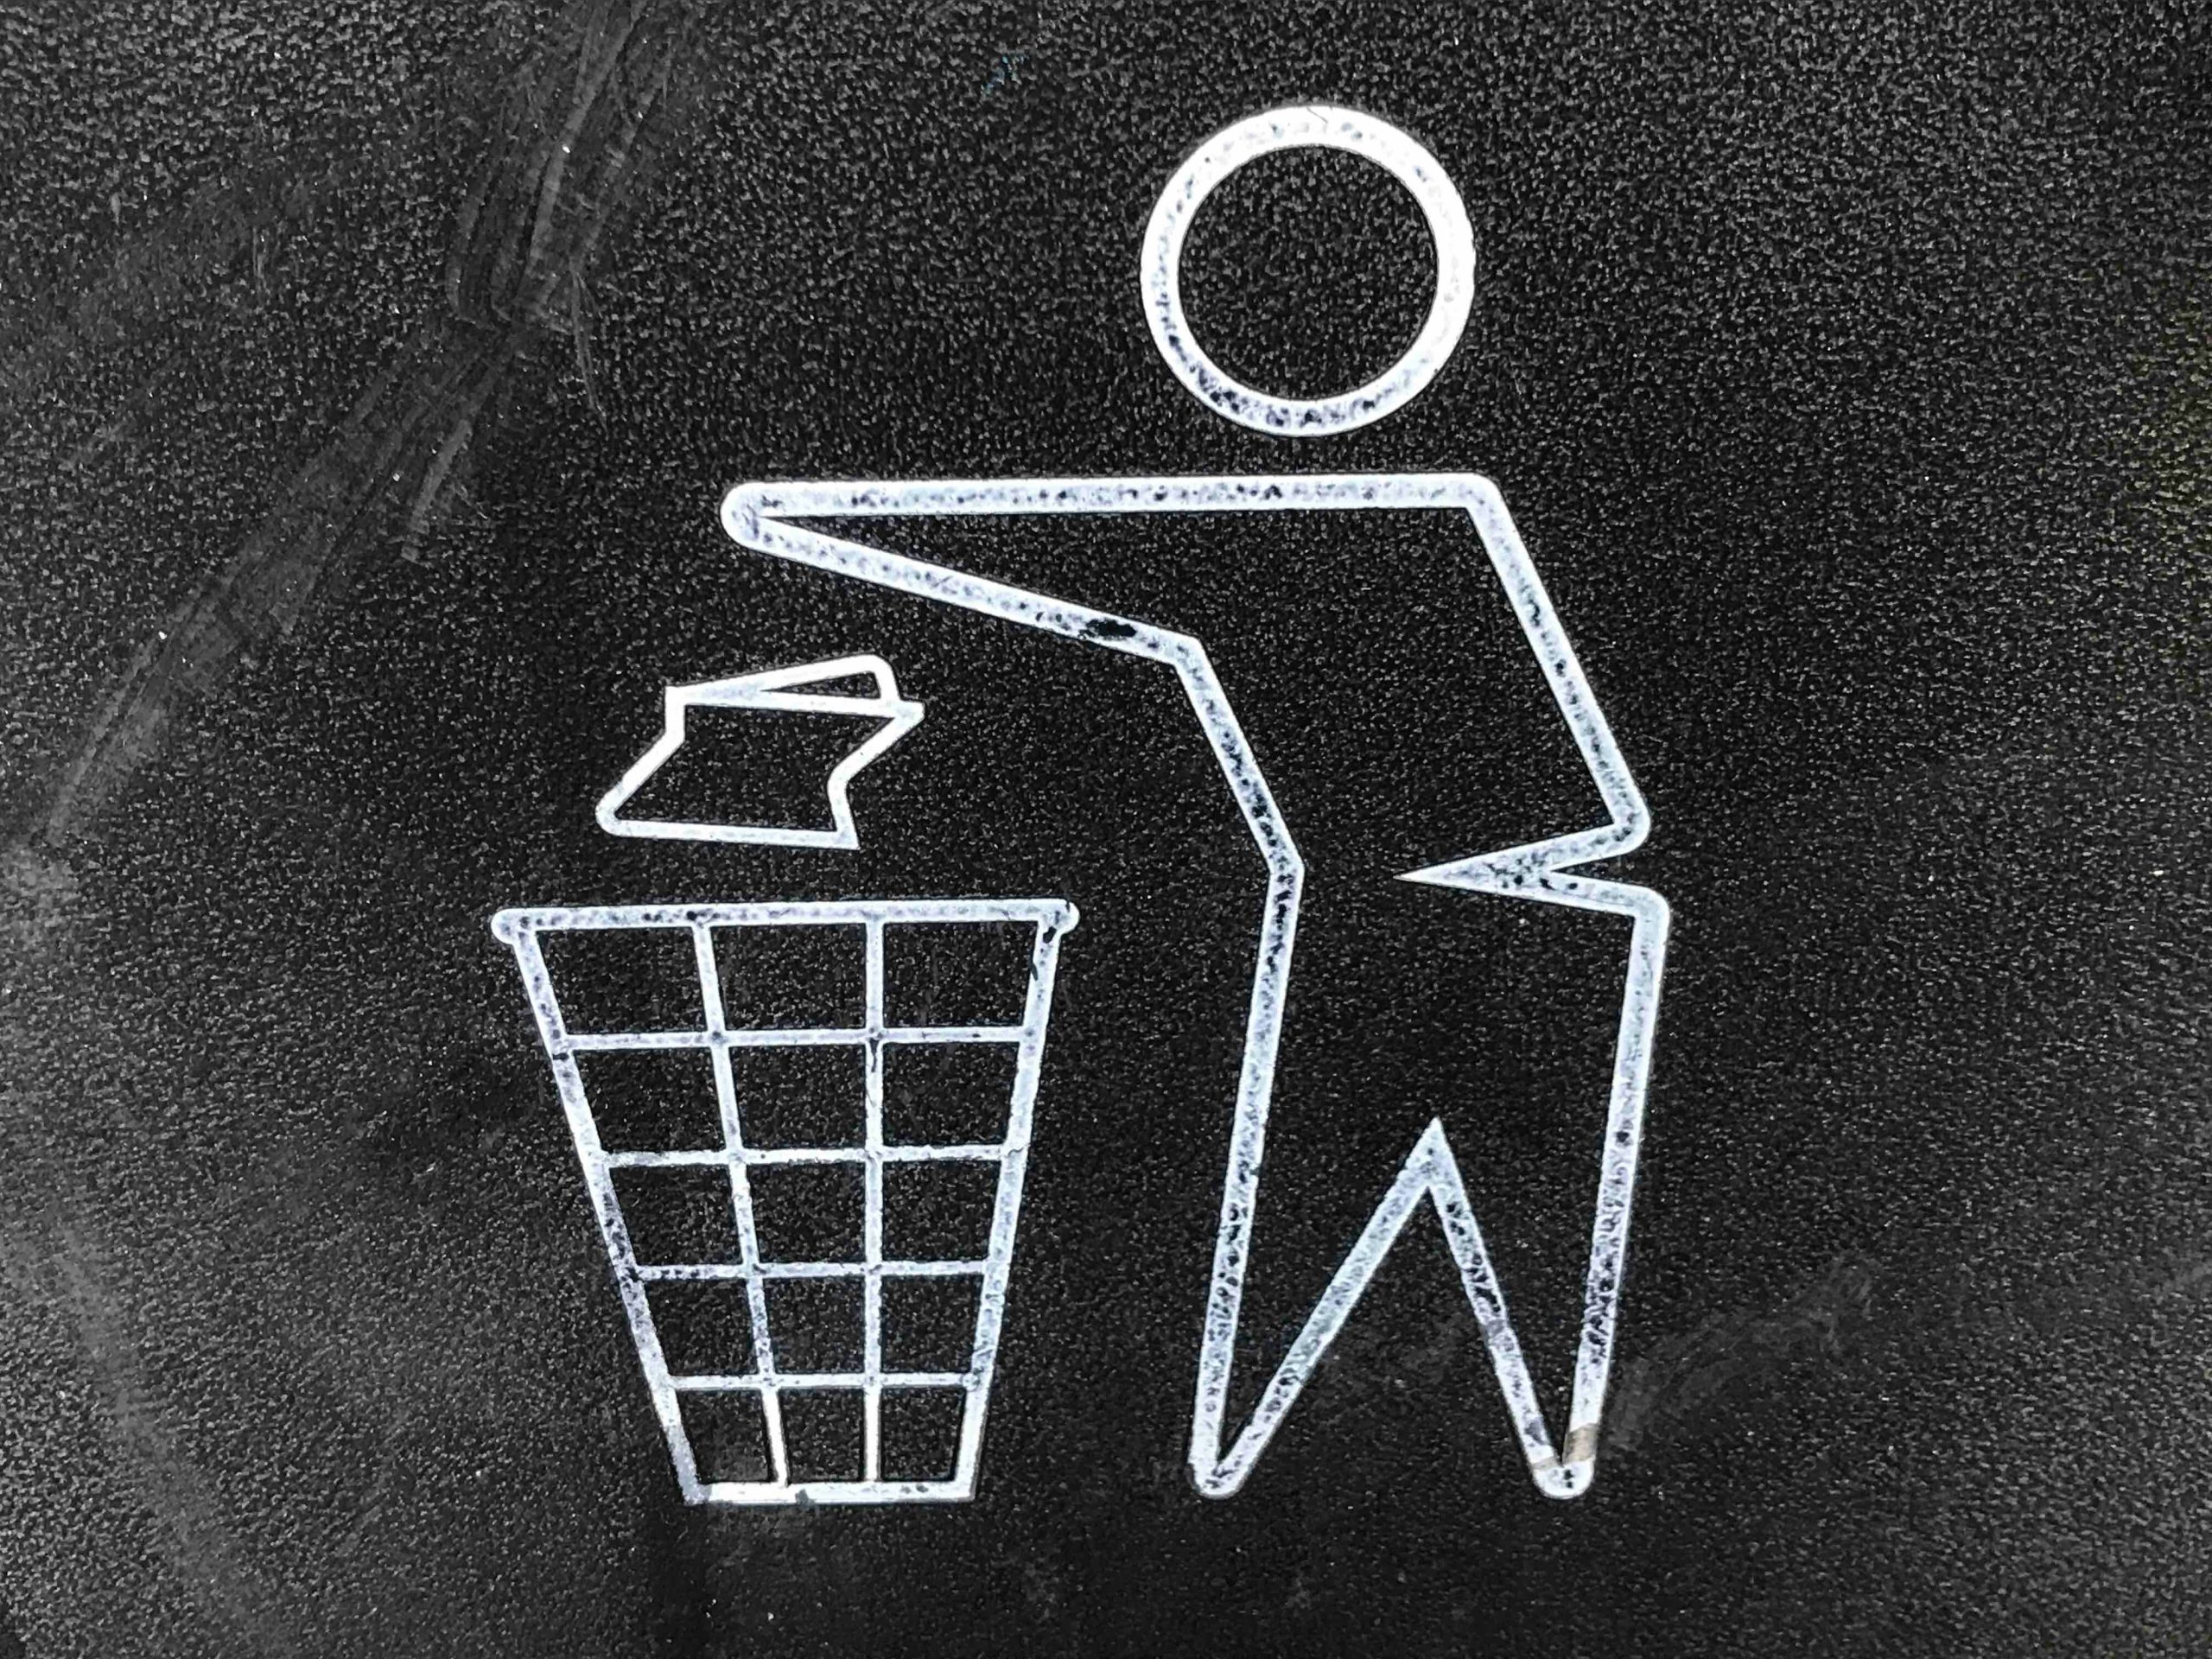 Heb je een goede afvalverwerking? Check het met deze 4 tips!